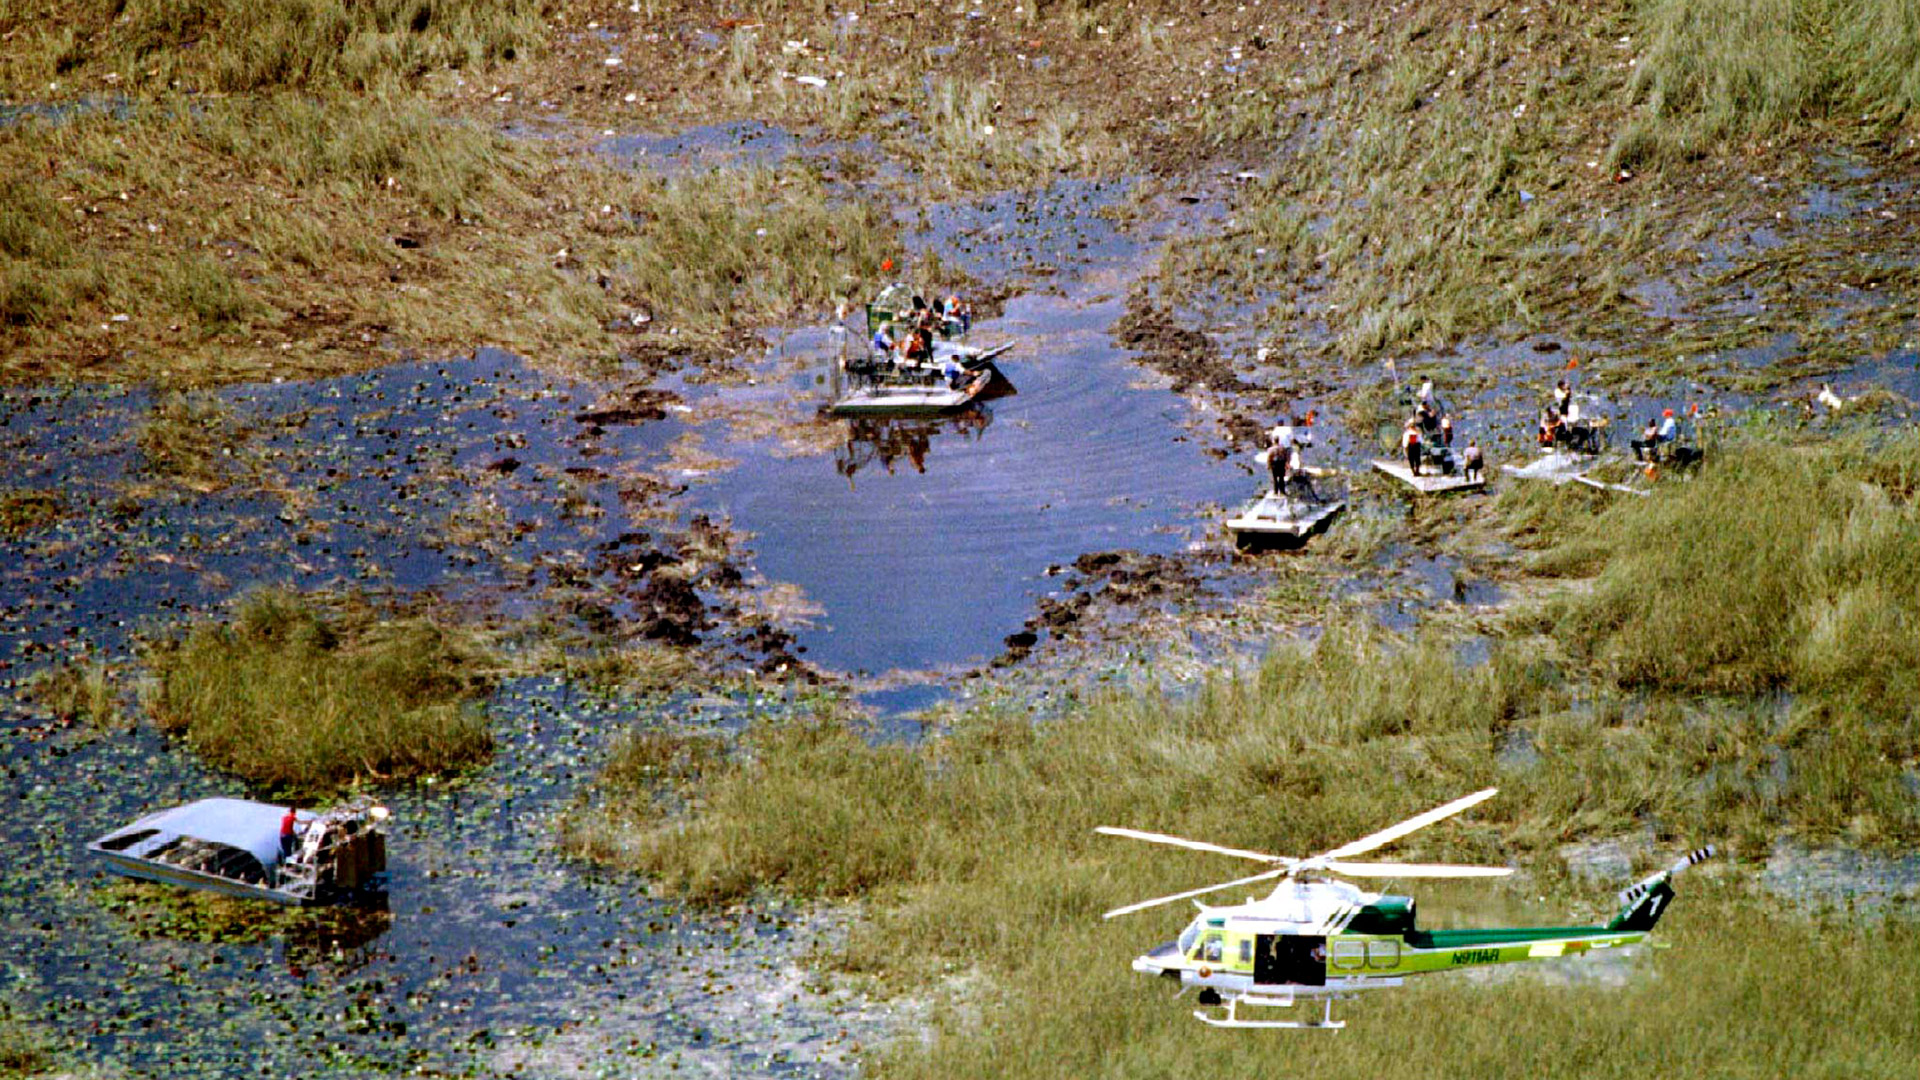 Rescatistas buscan sobrevivientes sin éxitos entre restos de avión esparcidos por los pantanos de Florida